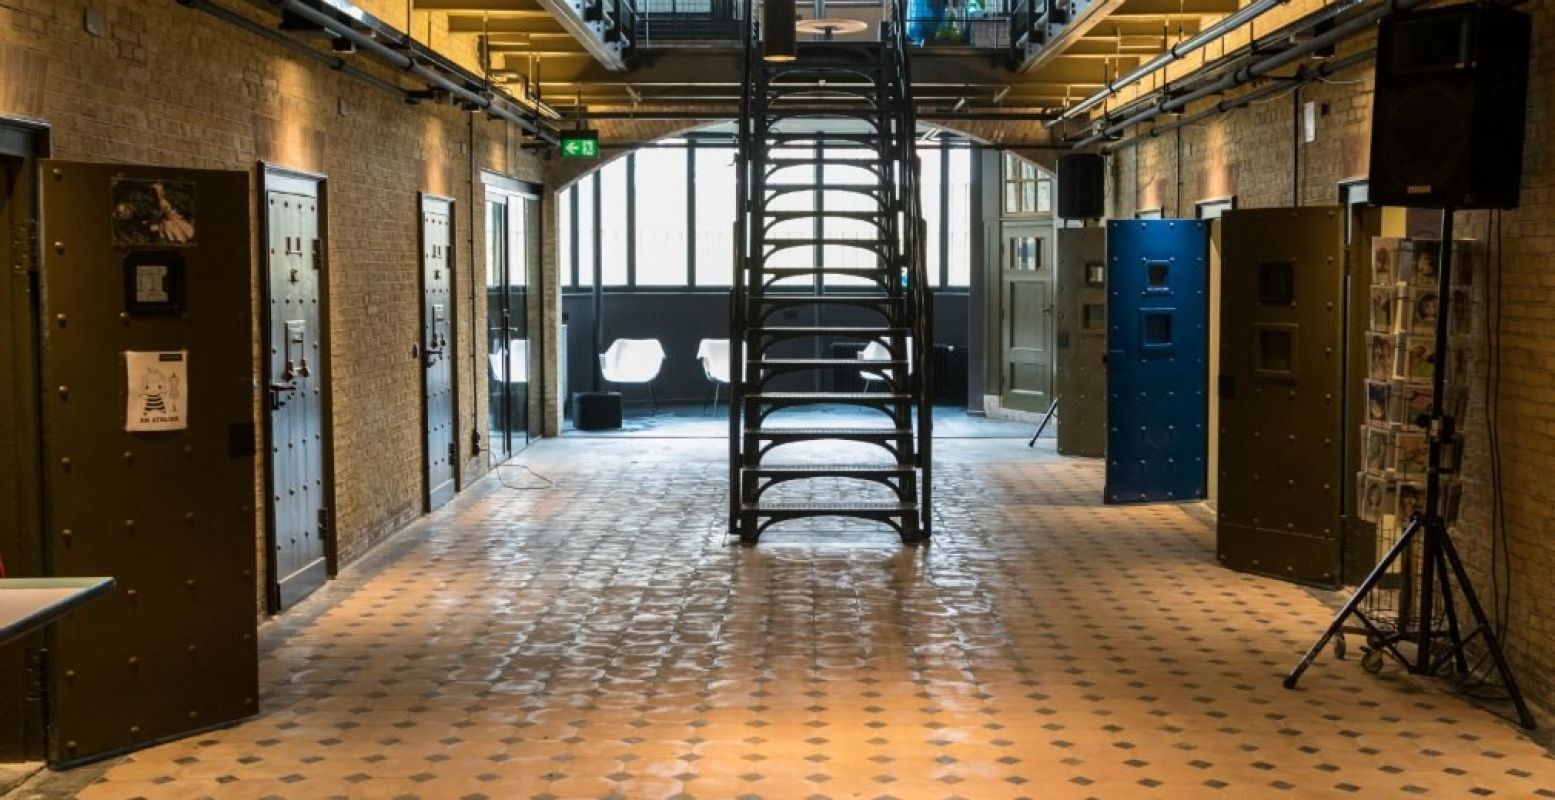 Ontdek de geschiedenis van de gevangenis tijdens een rondleiding. Foto: Jan van Dalen, Fotografie BOEi